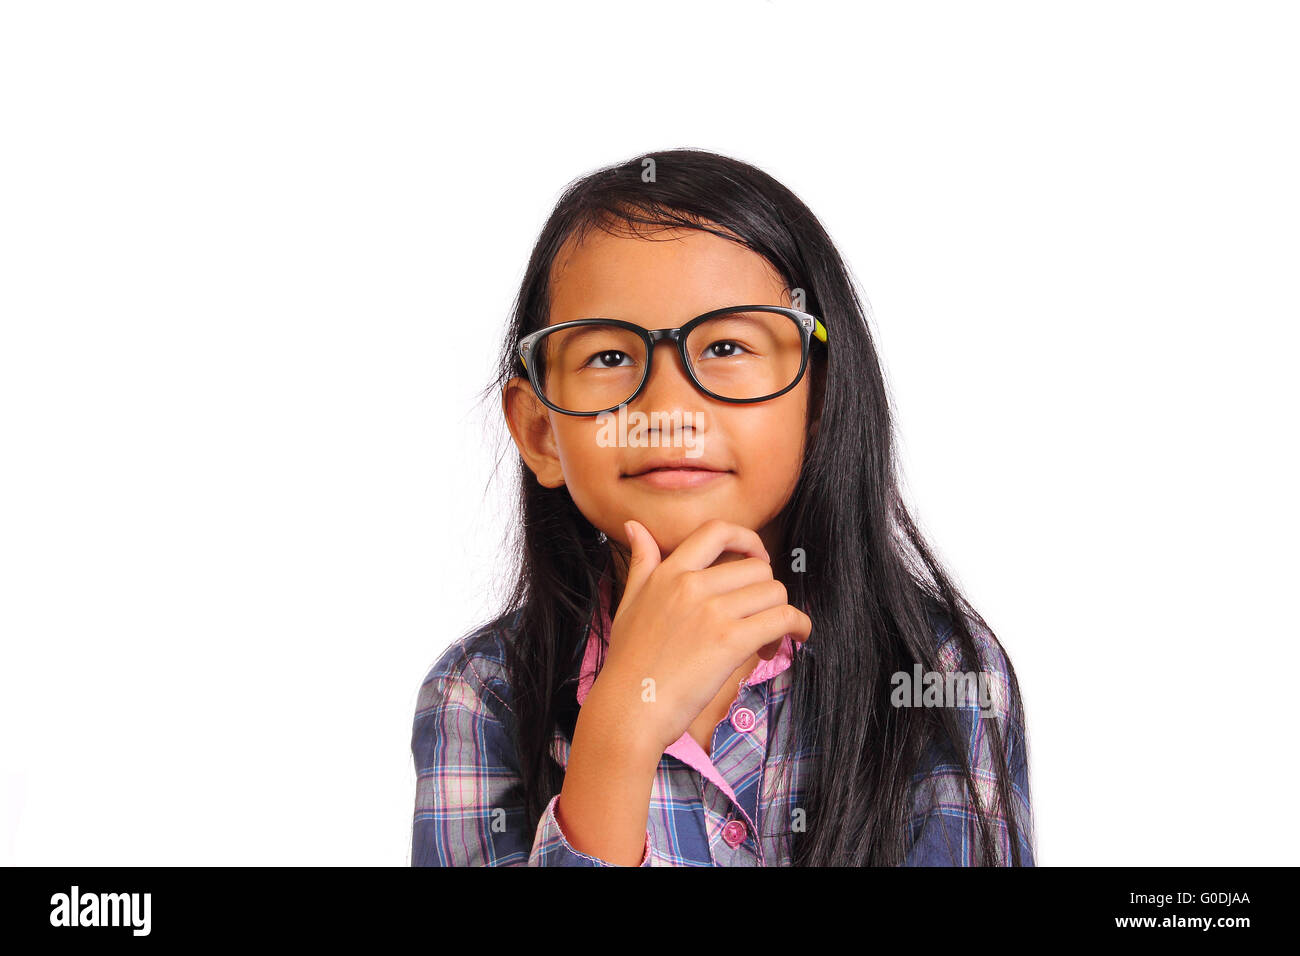 Kleines Mädchen mit Brille denken und lächelnd auf der Suche nach oben, während Sie ihr Kinn isoliert auf weiss berühren Stockfoto